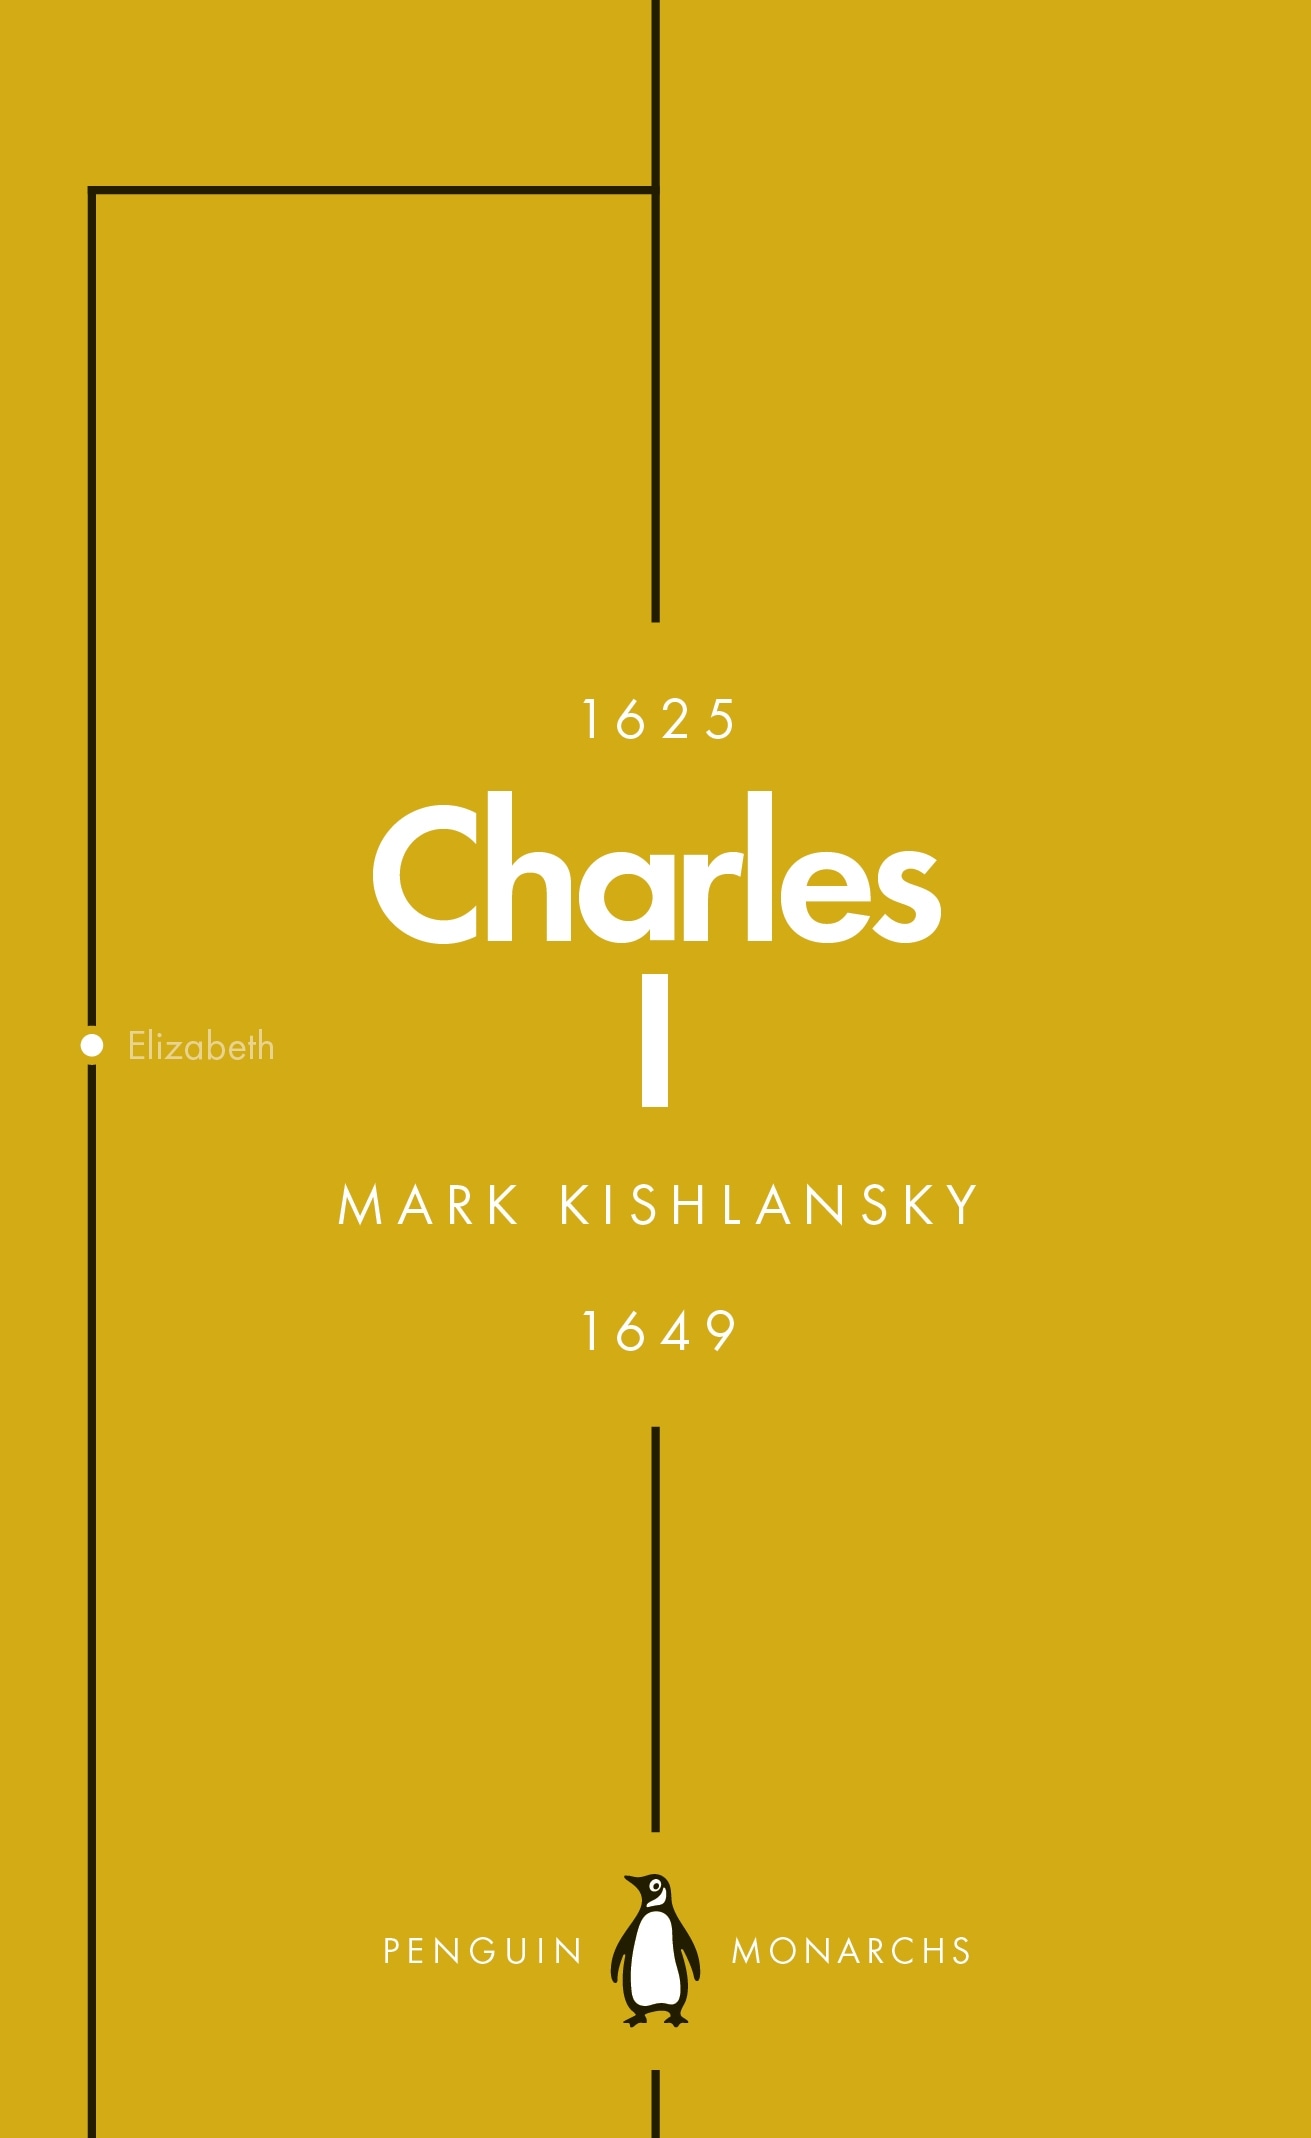 Book “Charles I (Penguin Monarchs)” by Mark Kishlansky — June 28, 2018